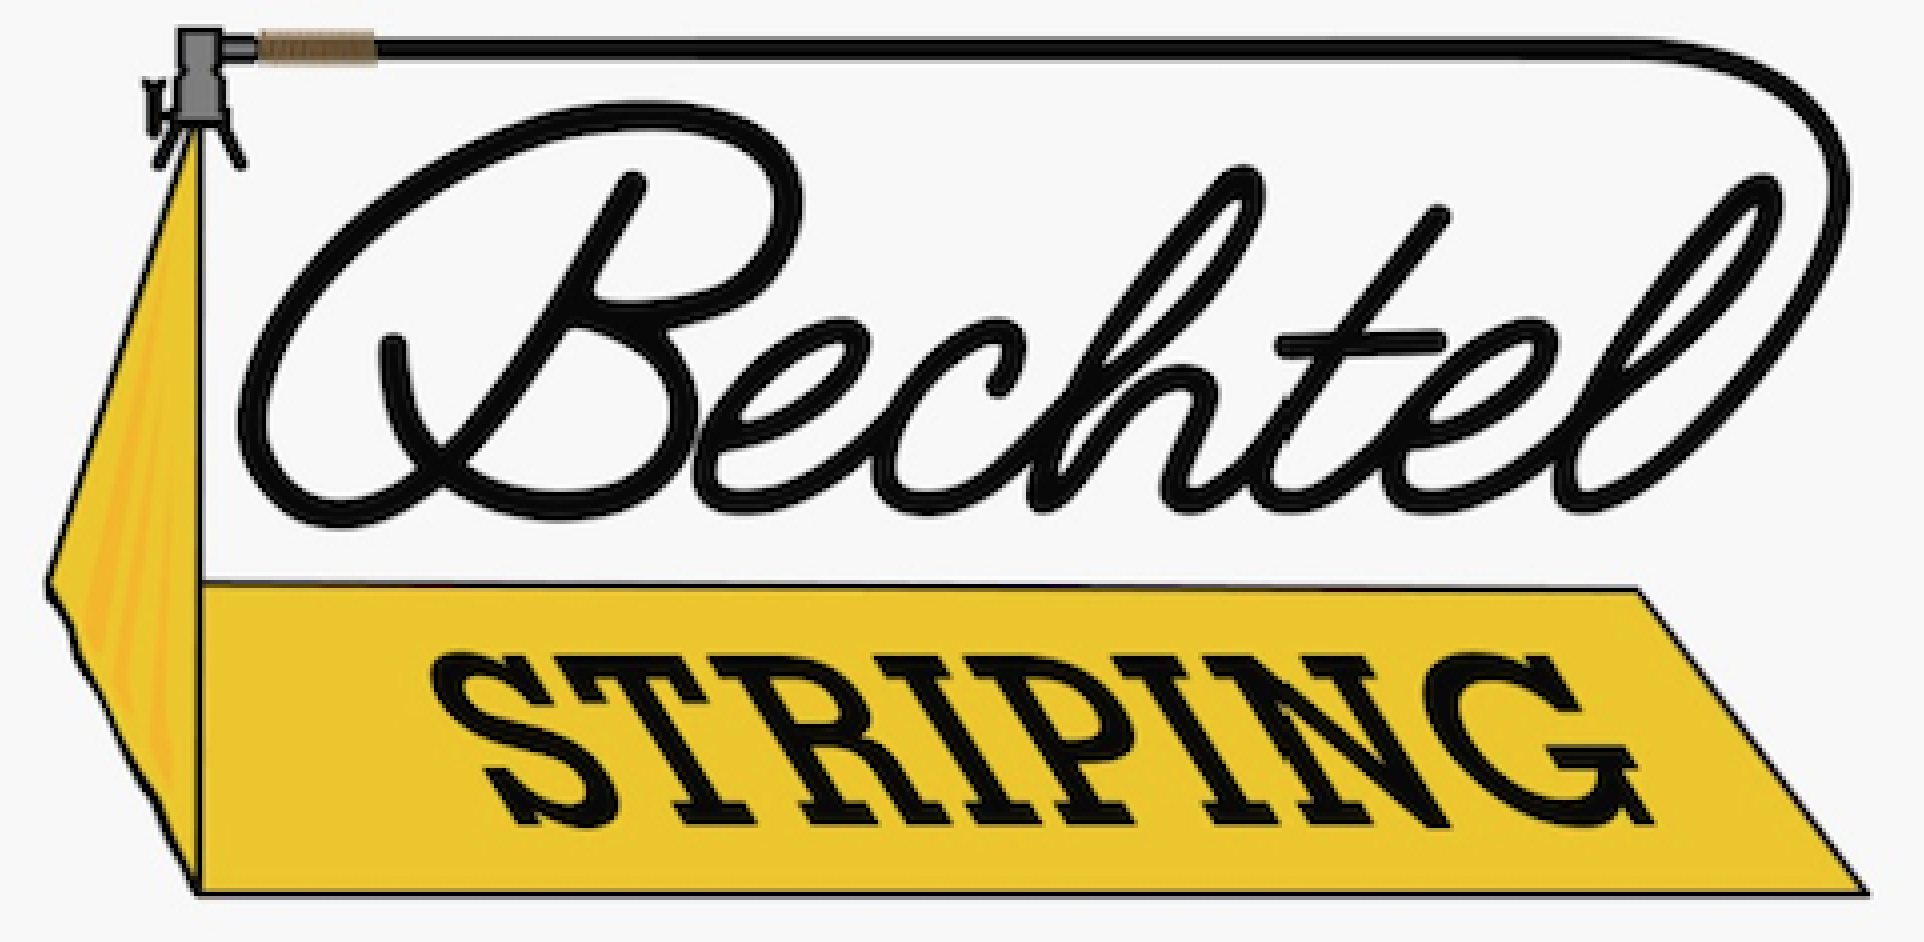 Bechtel Striping Logo